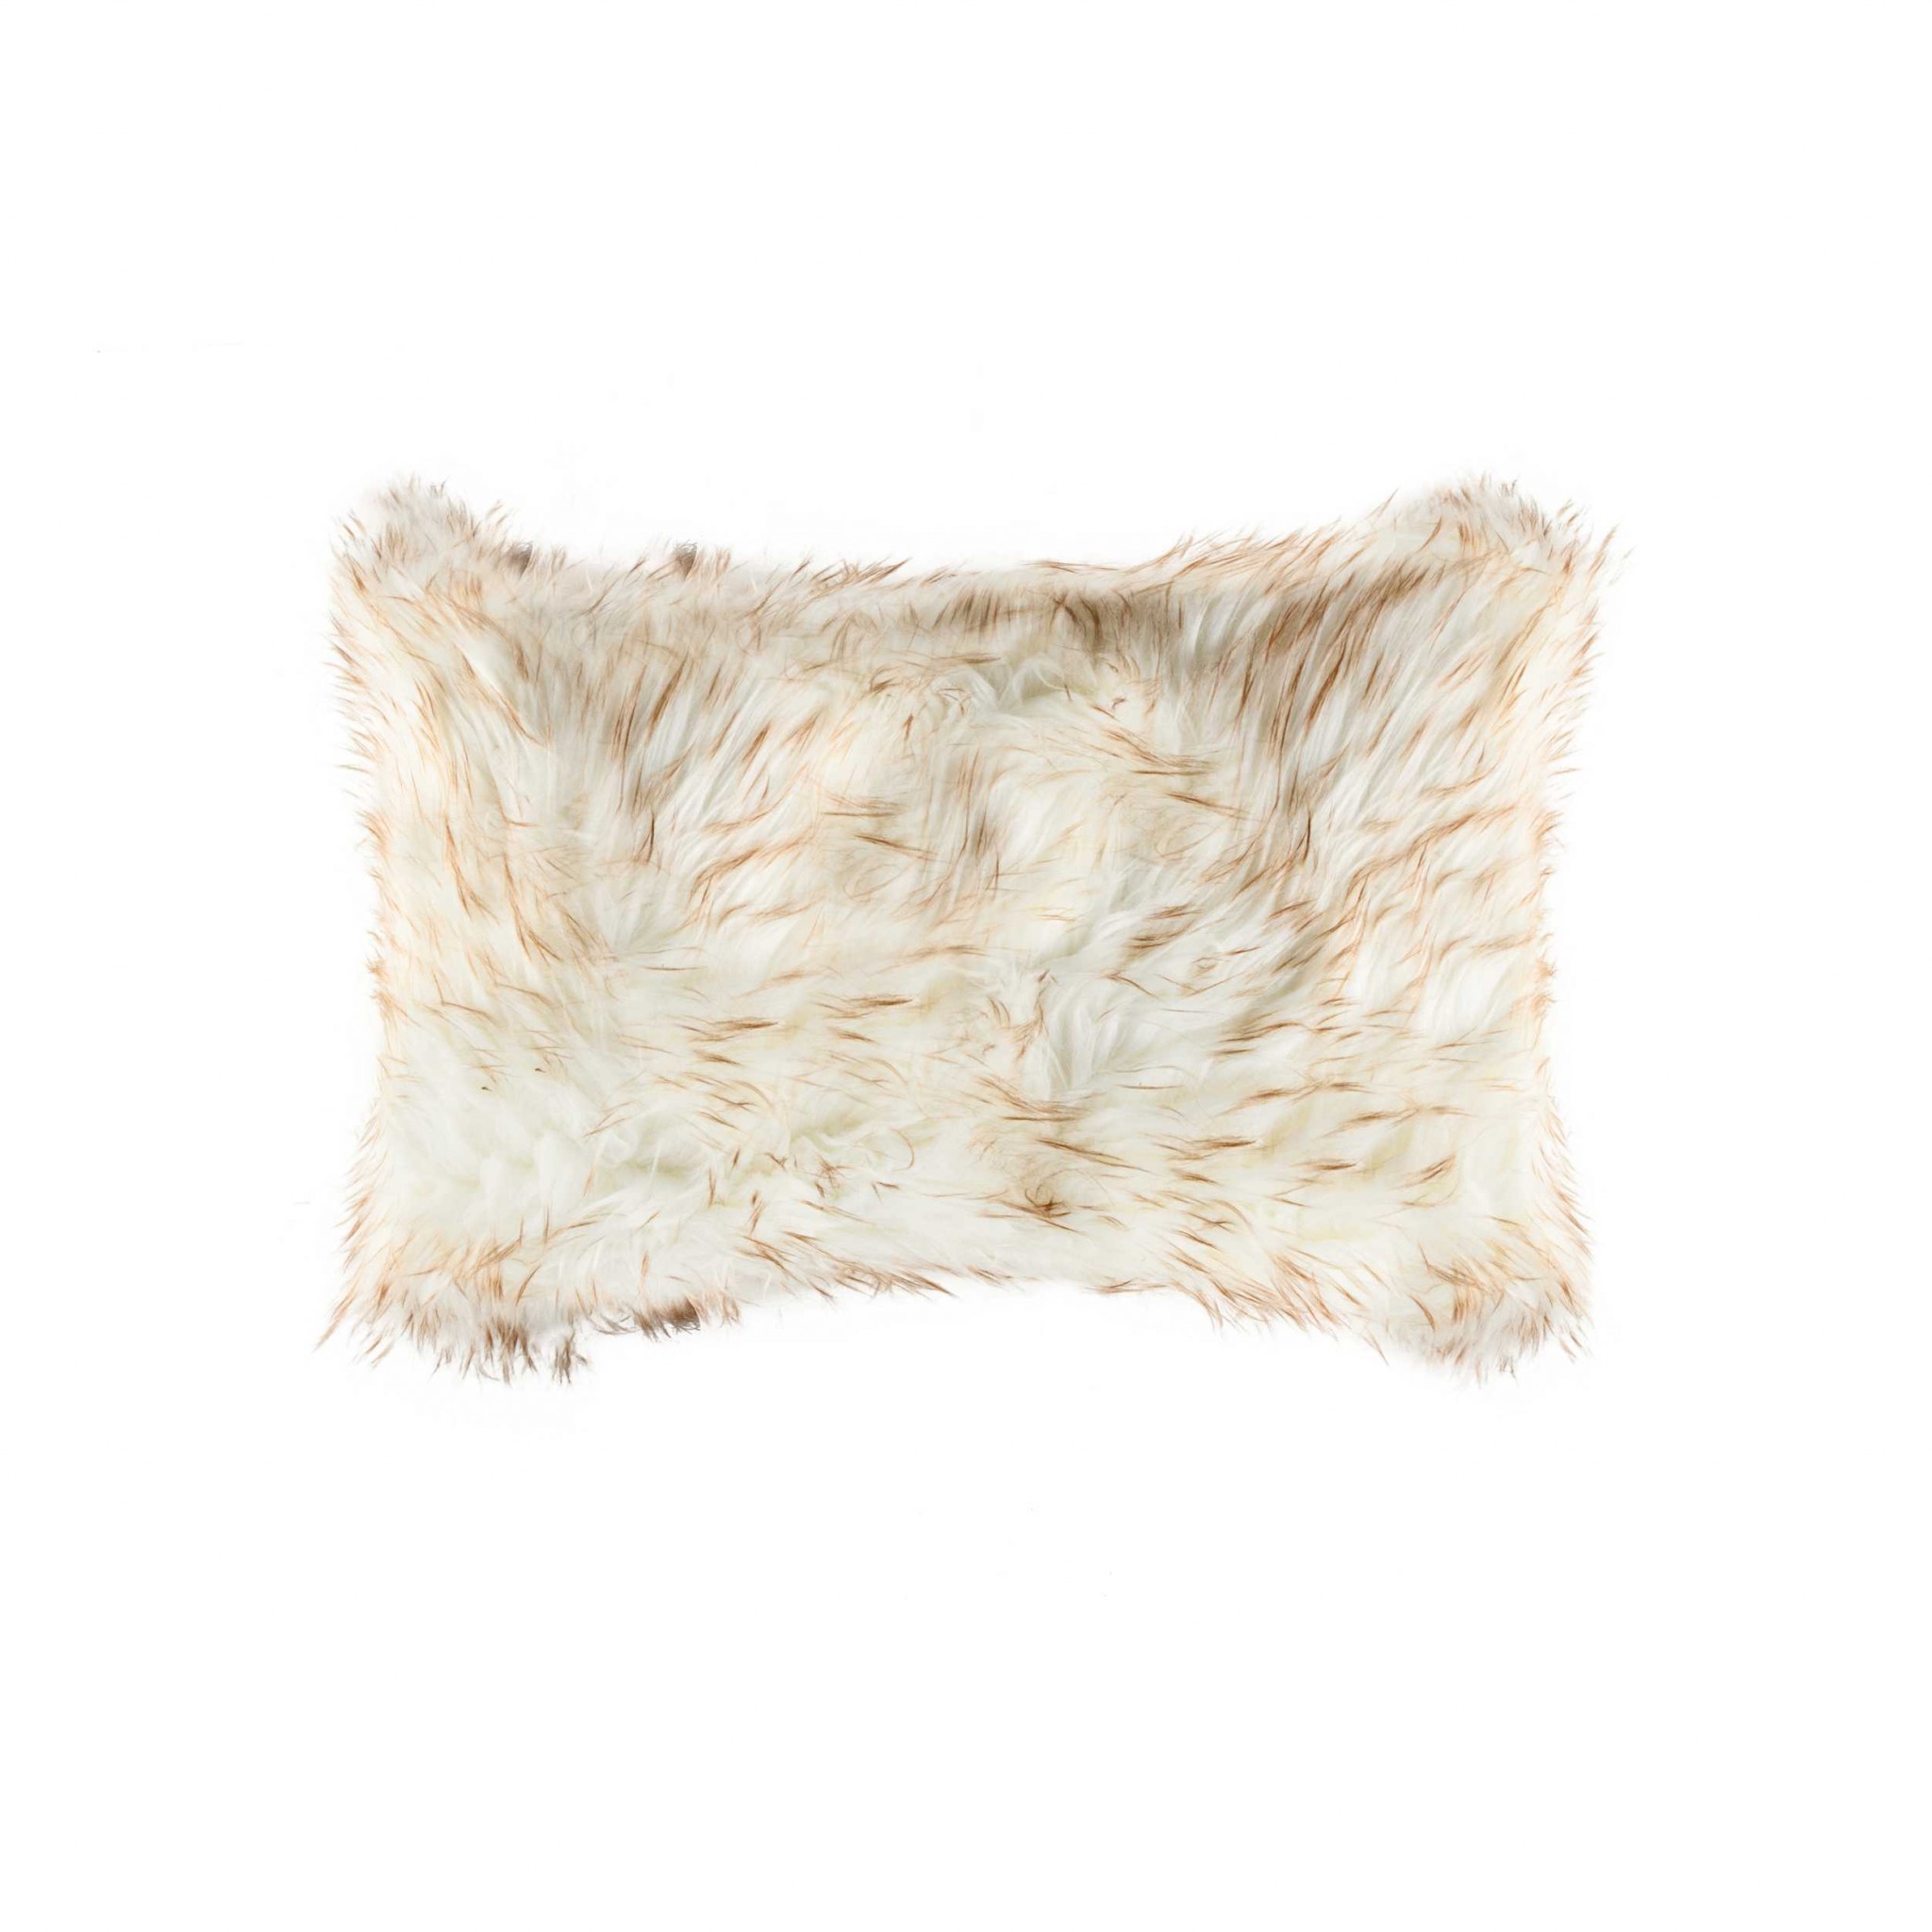 12" x 20" x 5" Gradient Tan Faux Fur - Pillow